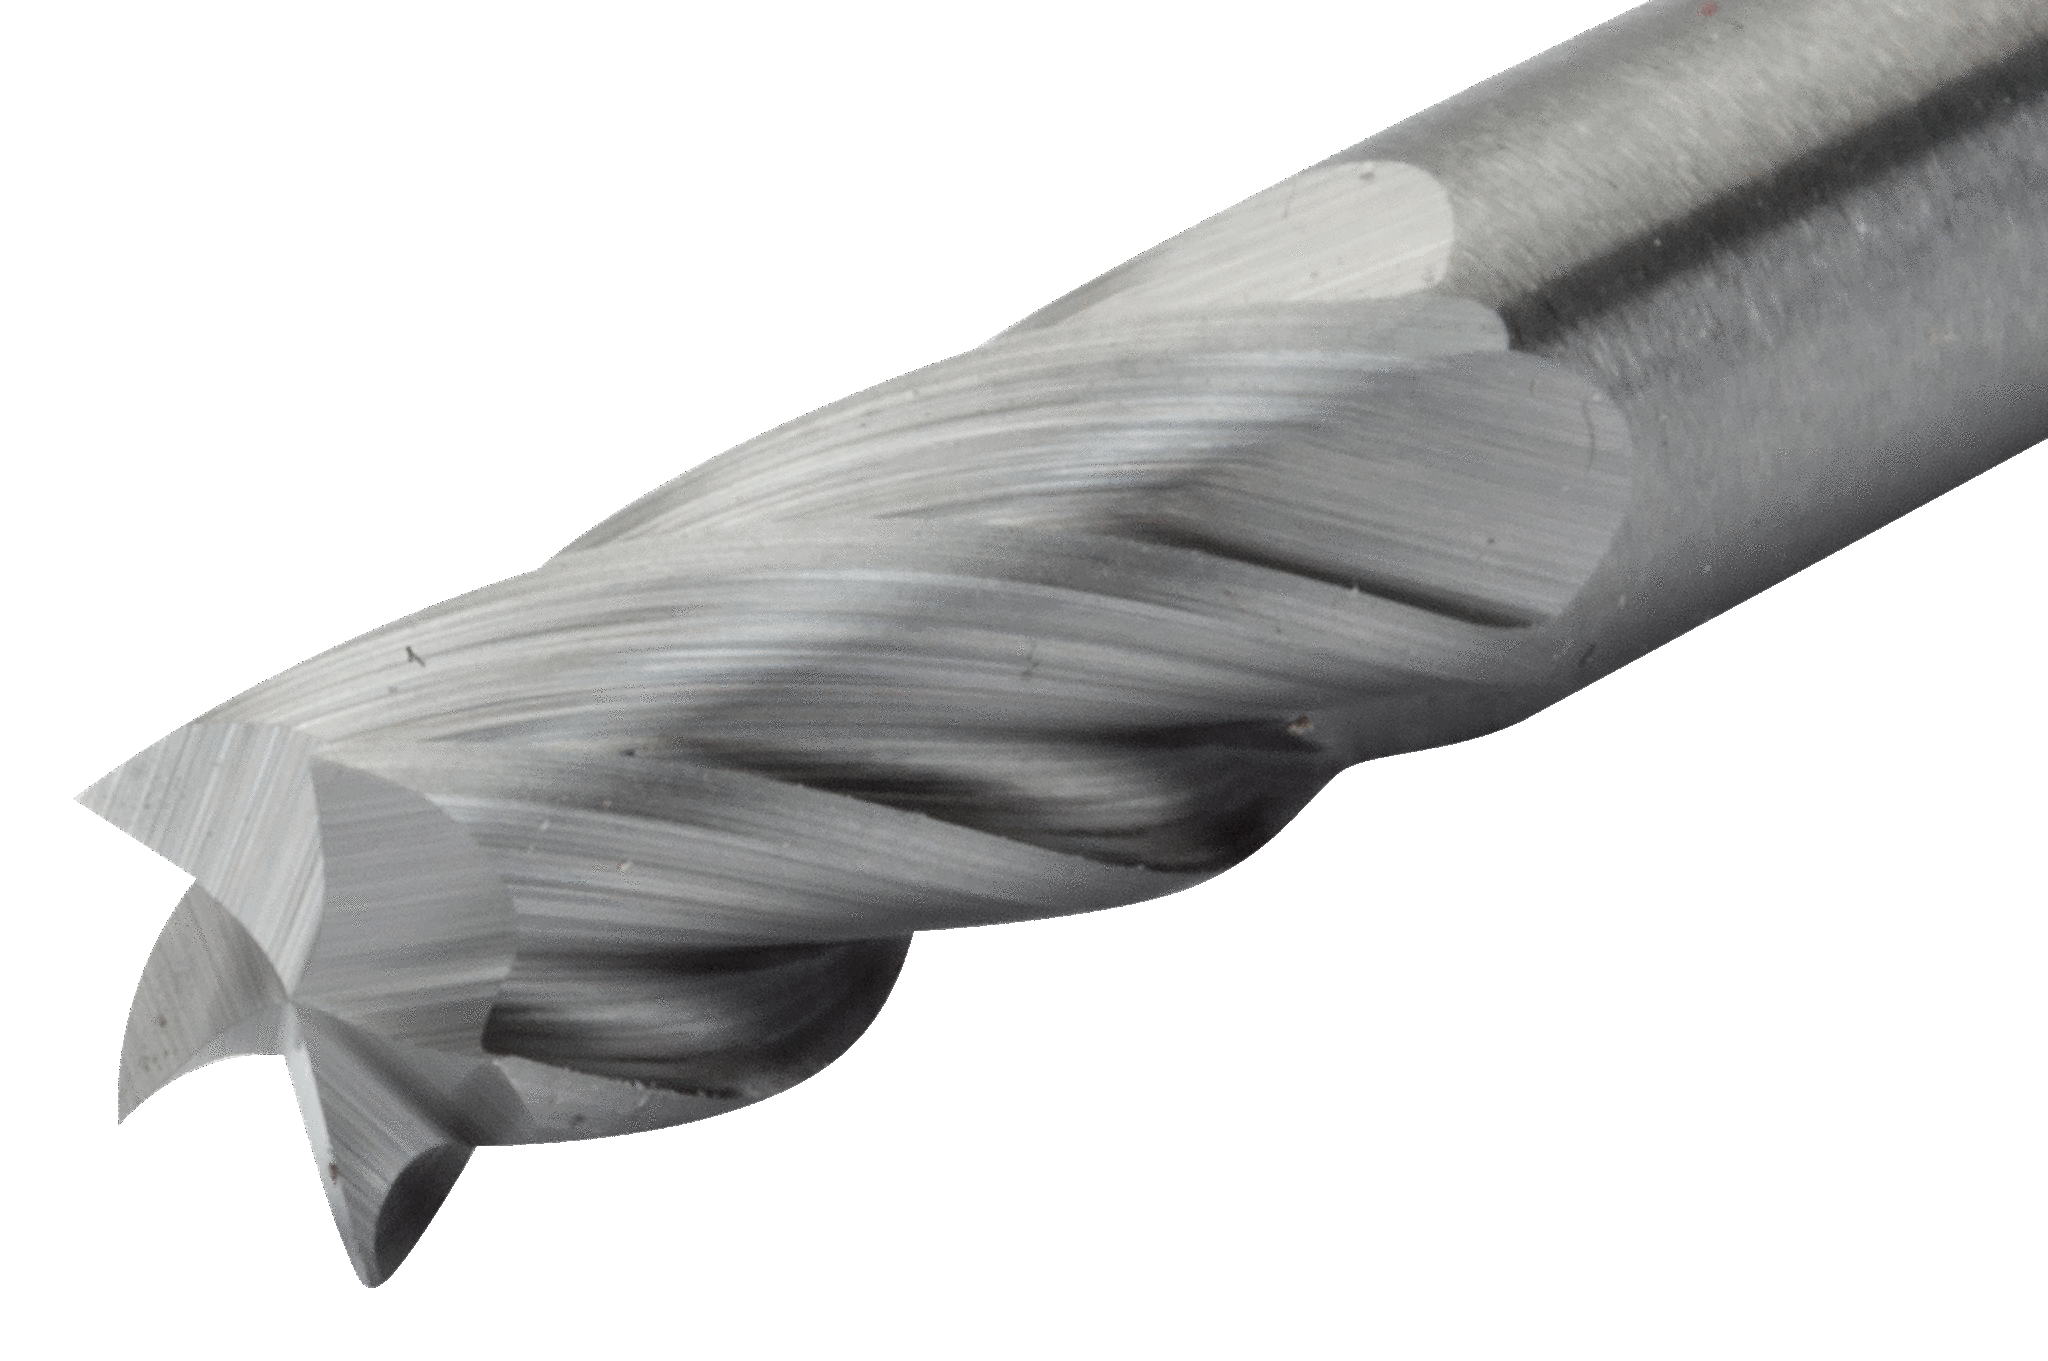 картинка Твердосплавные борфрезы с цилиндрической головкой по алюминию BAHCO A-AL от магазина "Элит-инструмент"